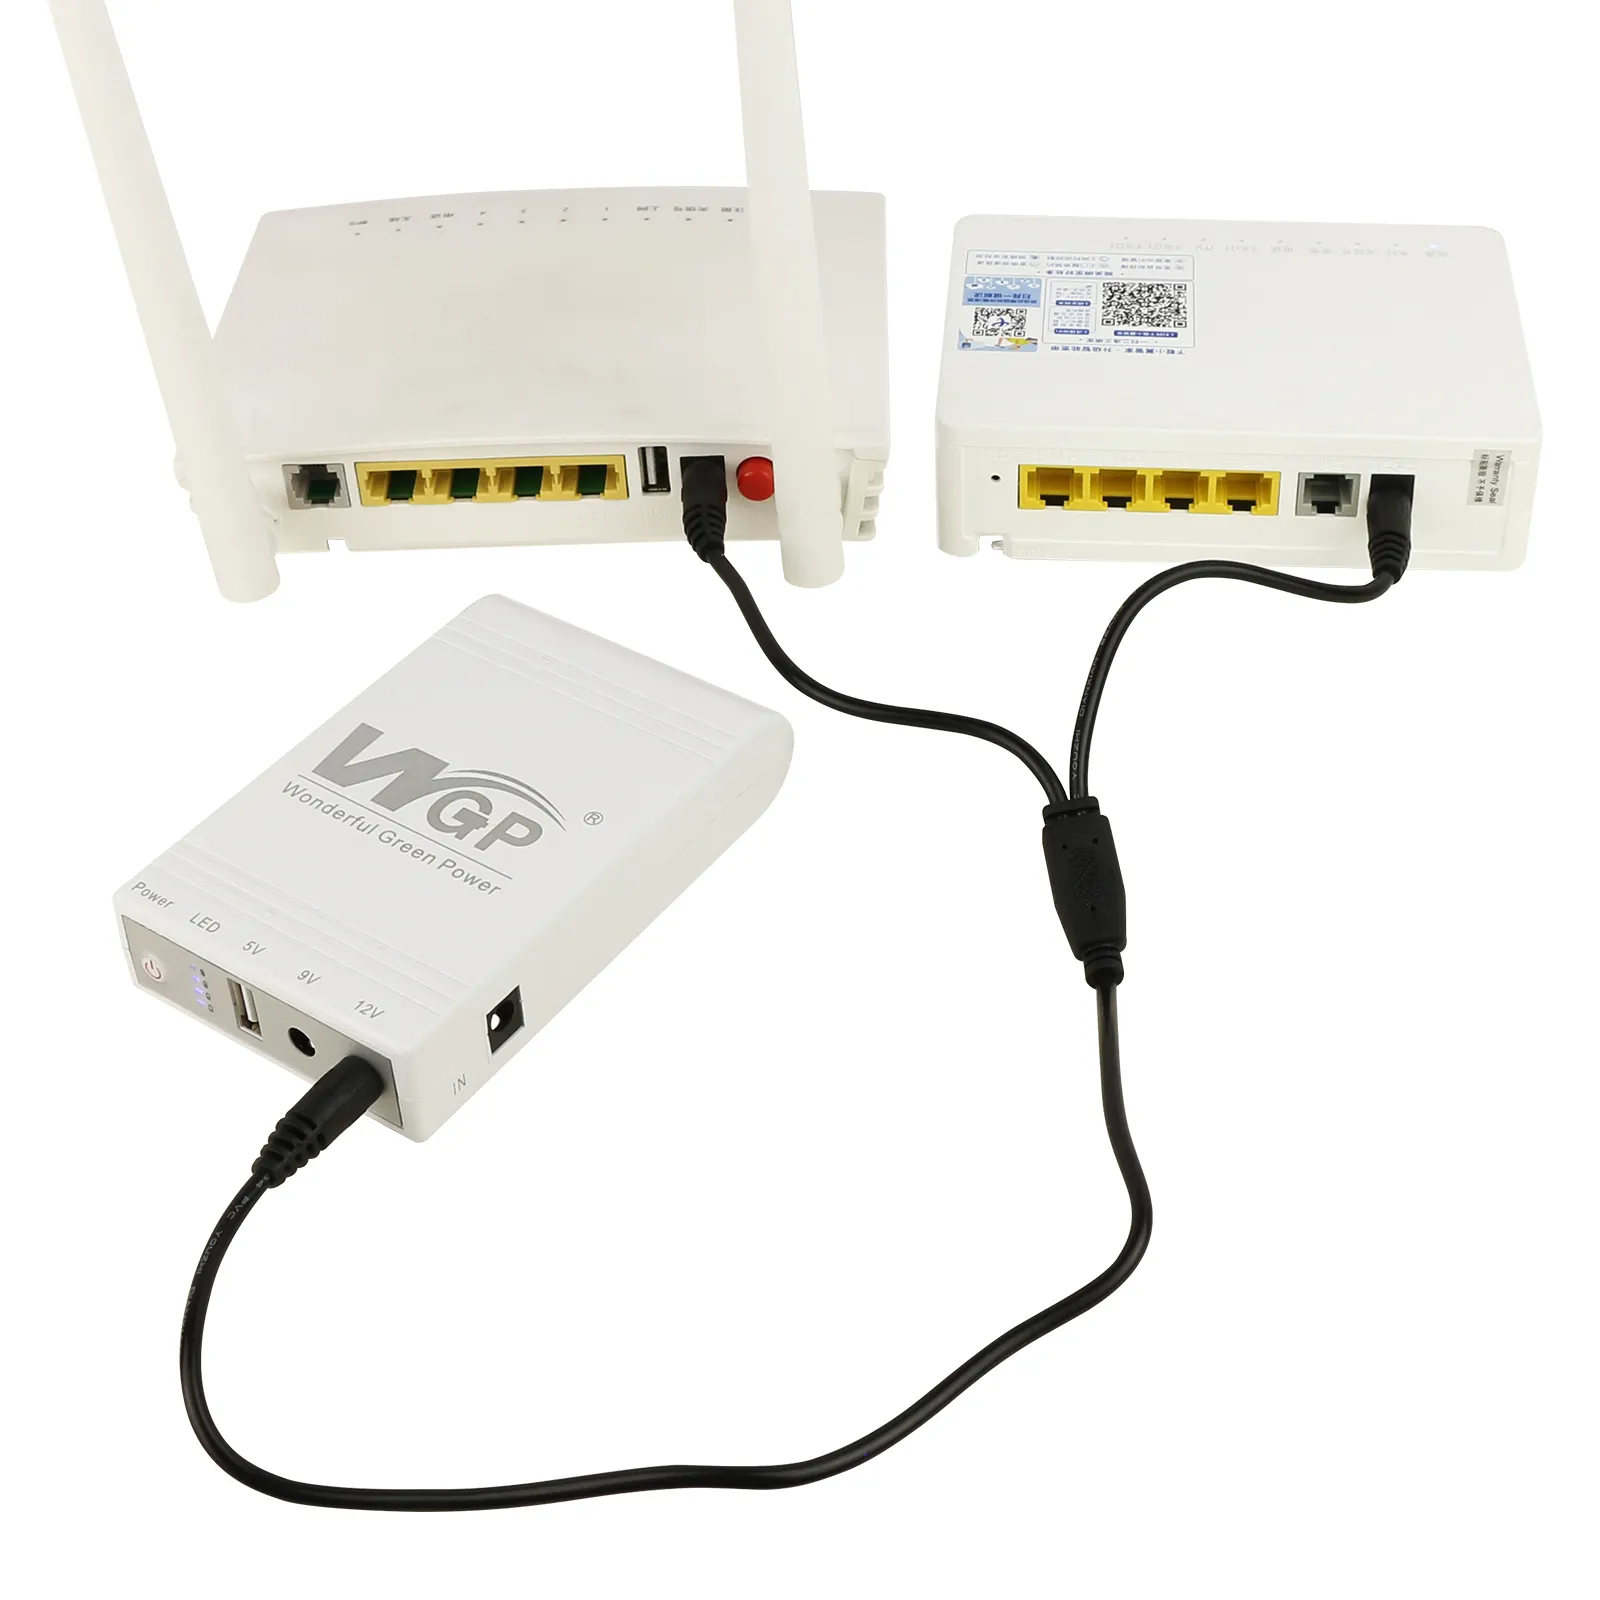 WGP 5 В 9 В 12 В 10400 мАч несколько функций вывода, резервное копирование мини-ИБП, мини-ИБП для Wi-Fi маршрутизатора